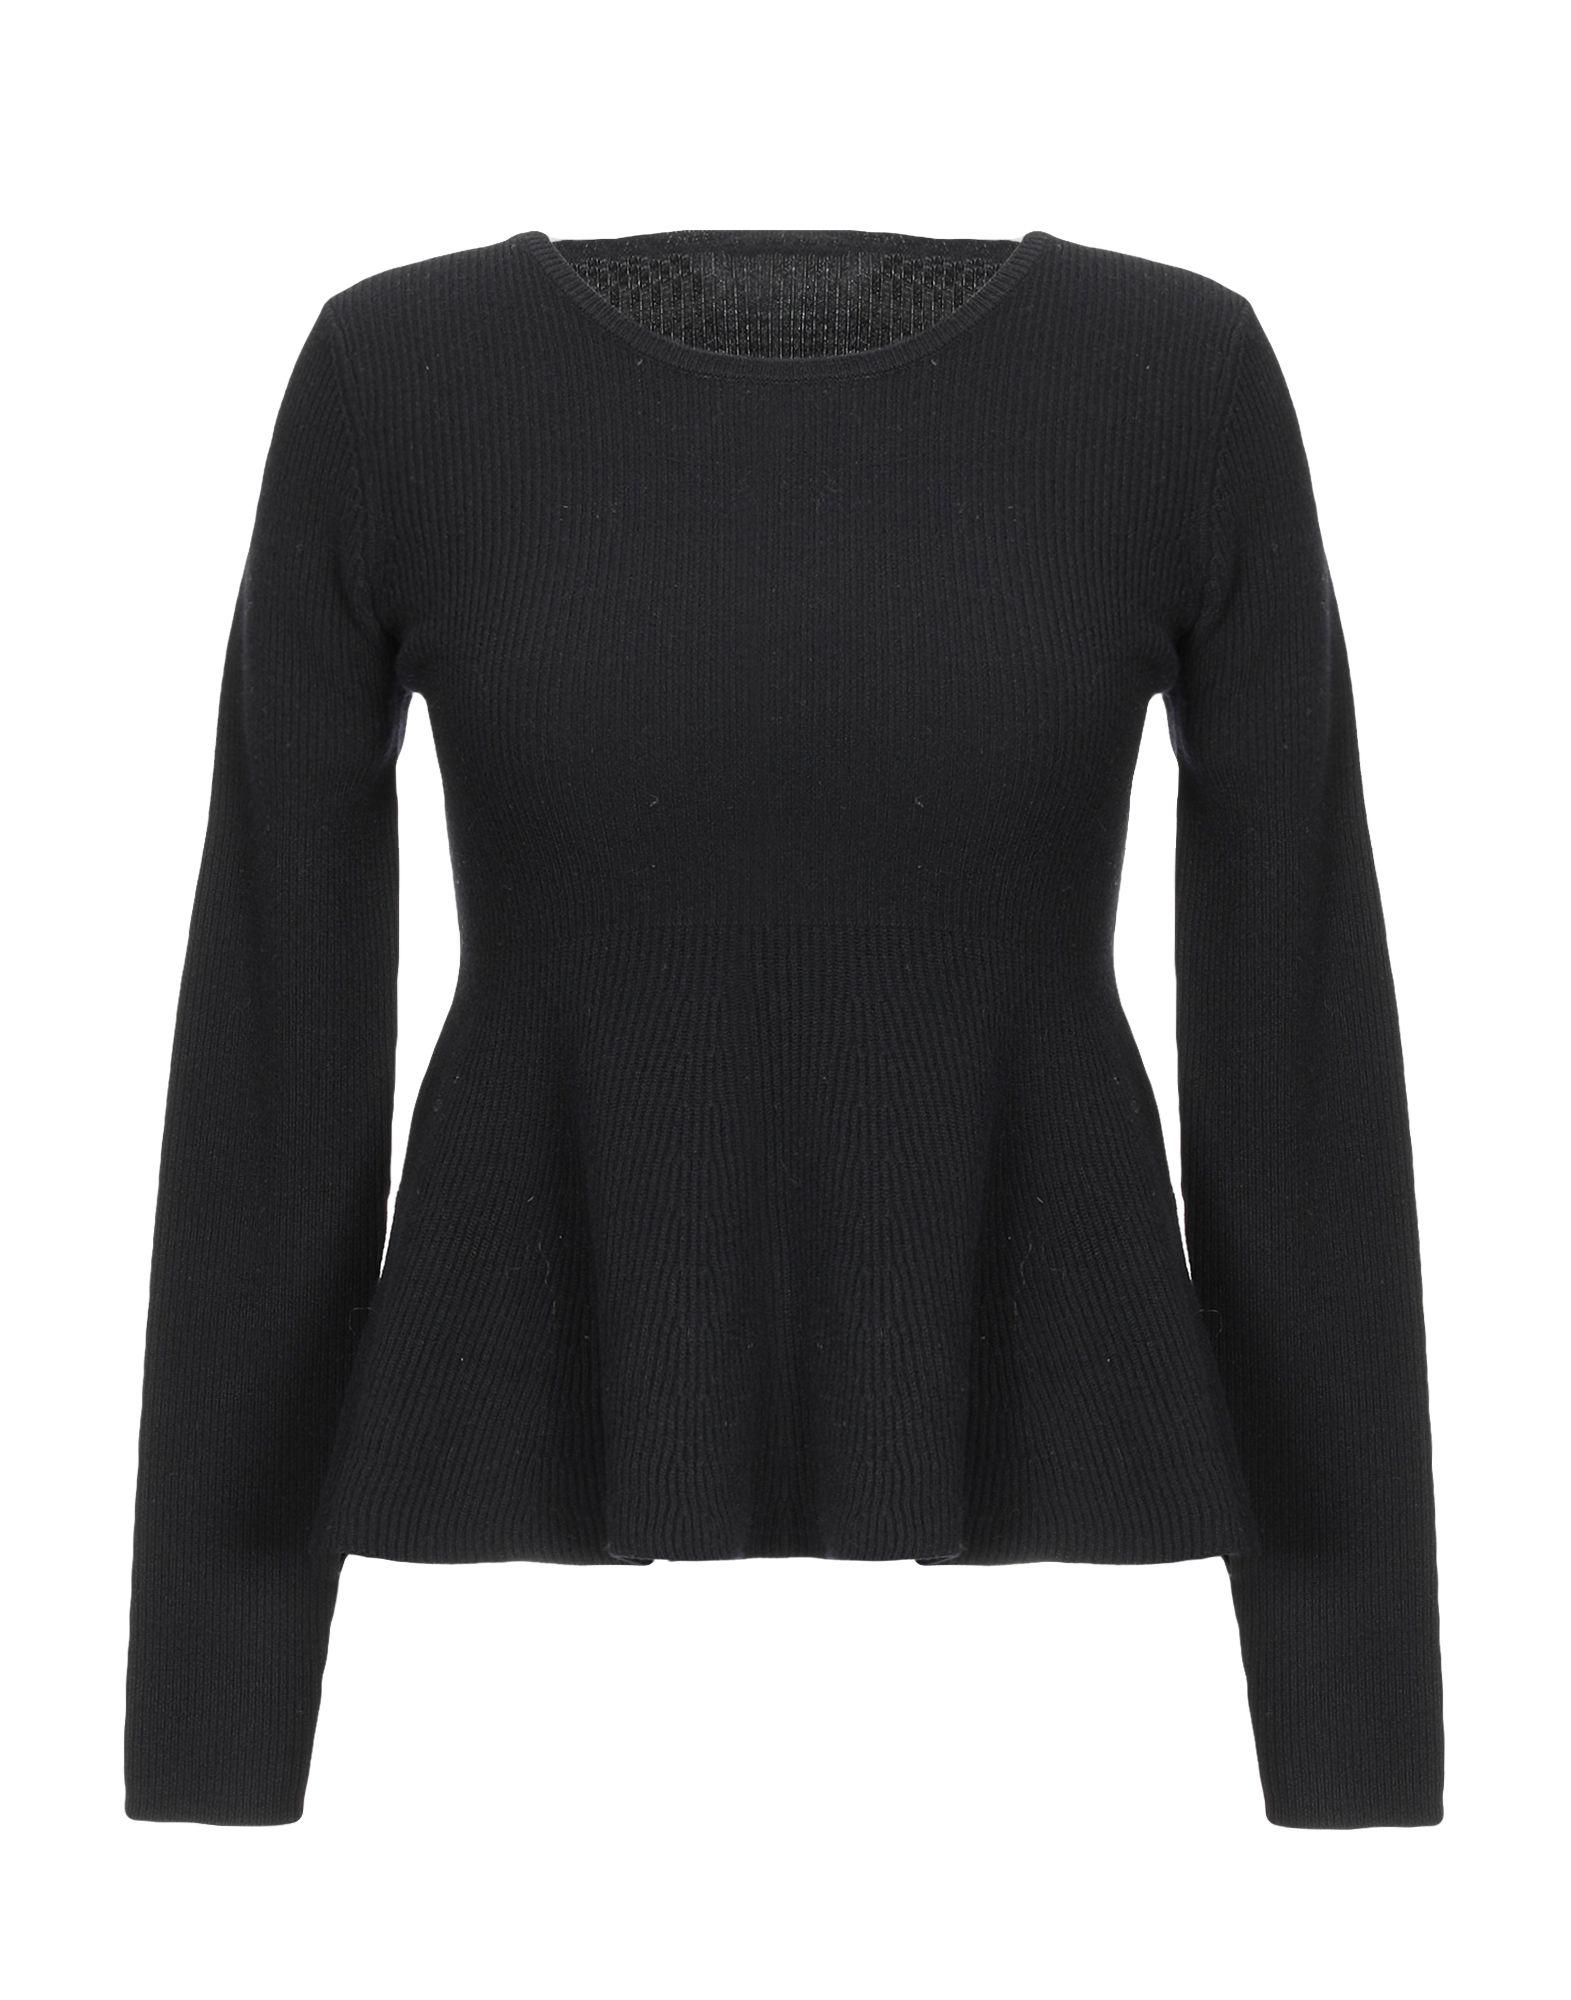 Totême Wool Sweater in Black - Lyst